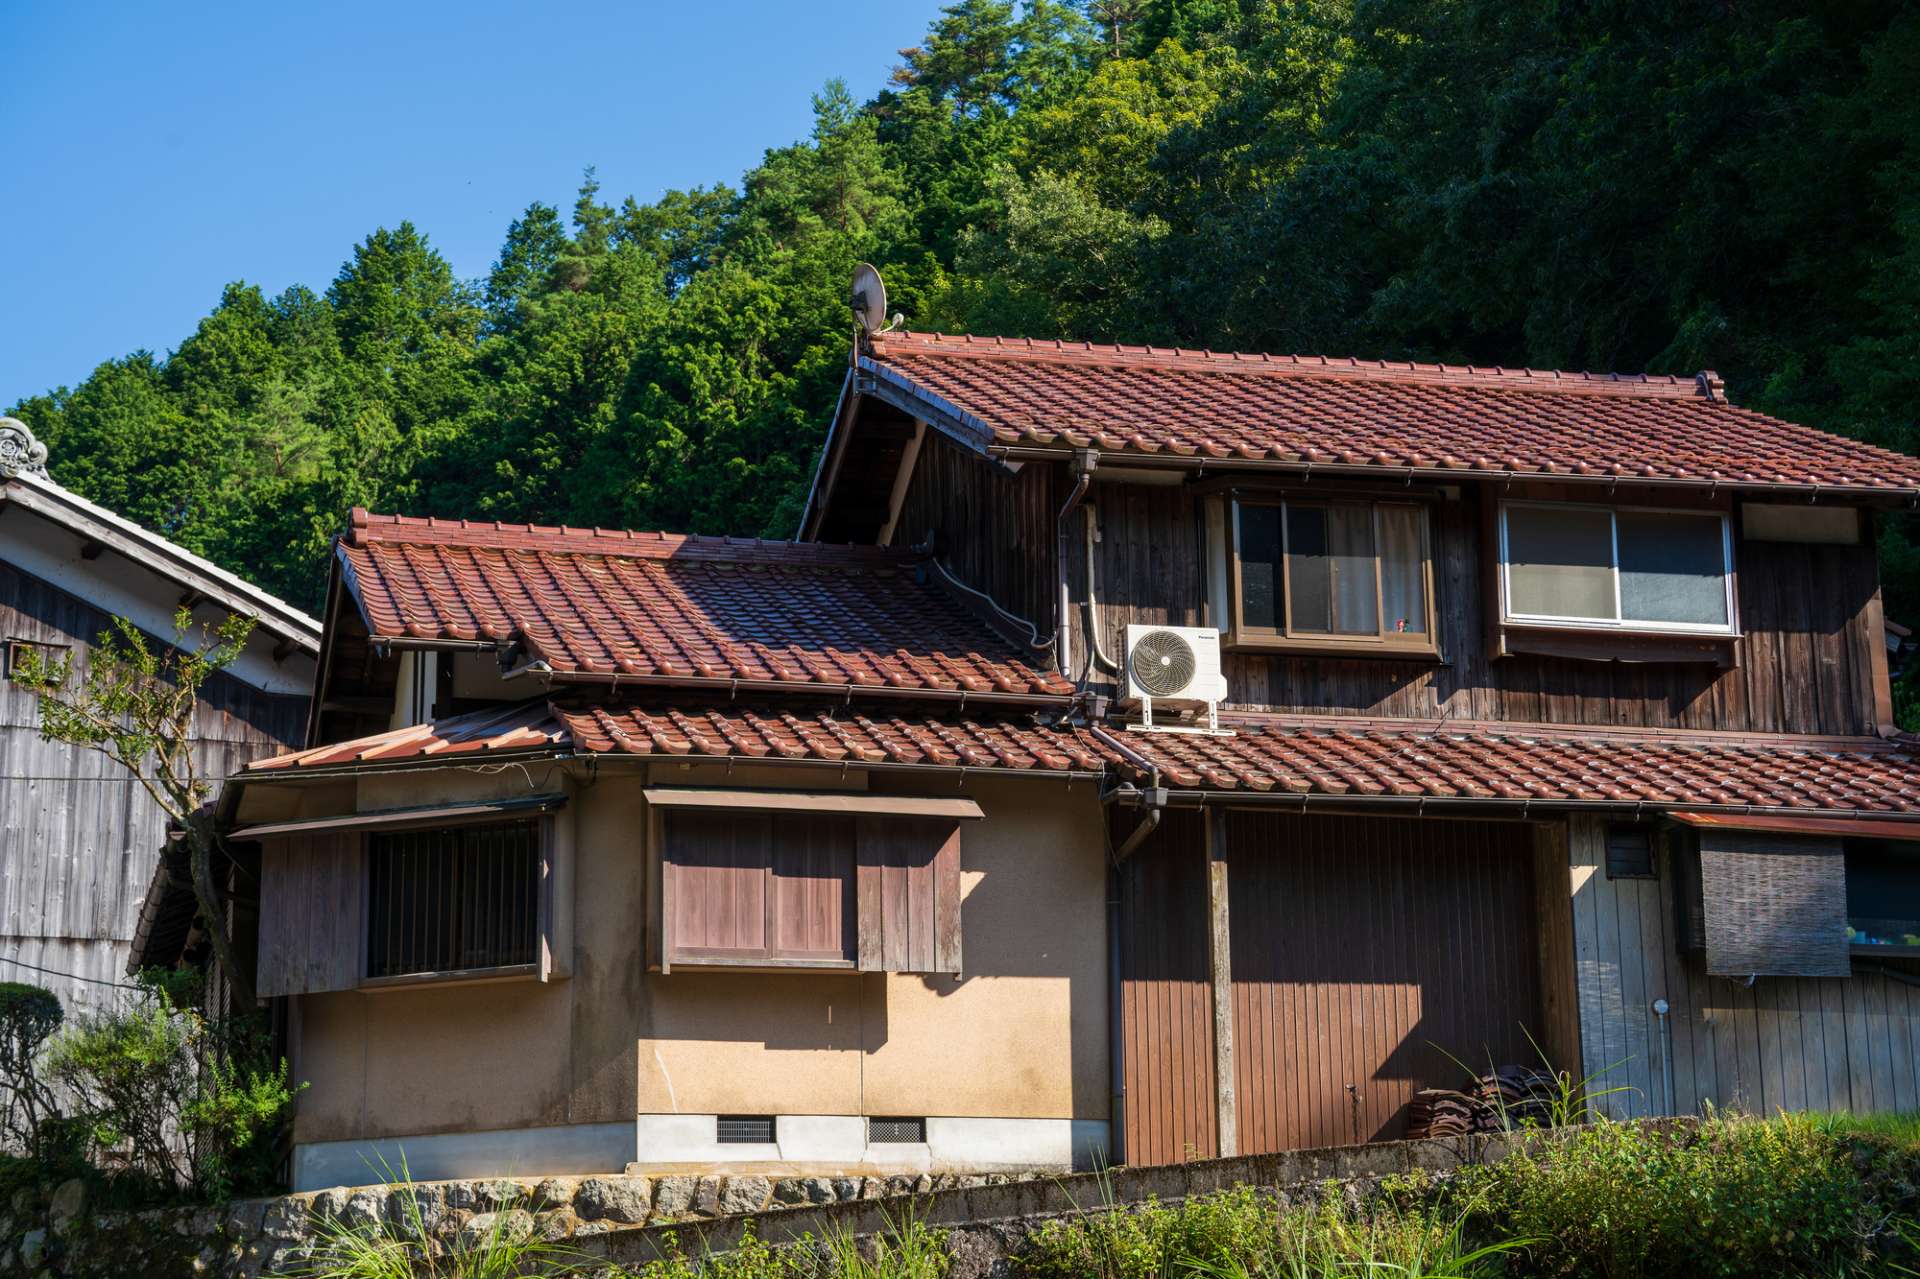 再利用に重点を置いた空き家対策を奈良近隣の皆様に紹介